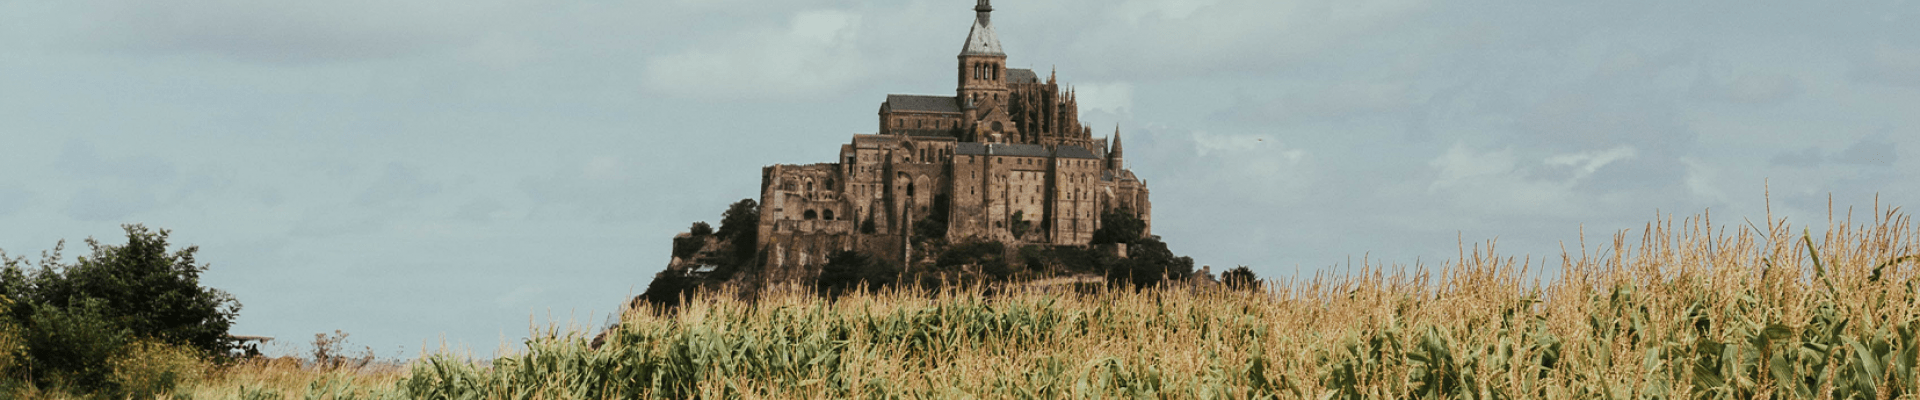 Le Mont-Saint-Michel- Celine-Camiotponcet - Pexels